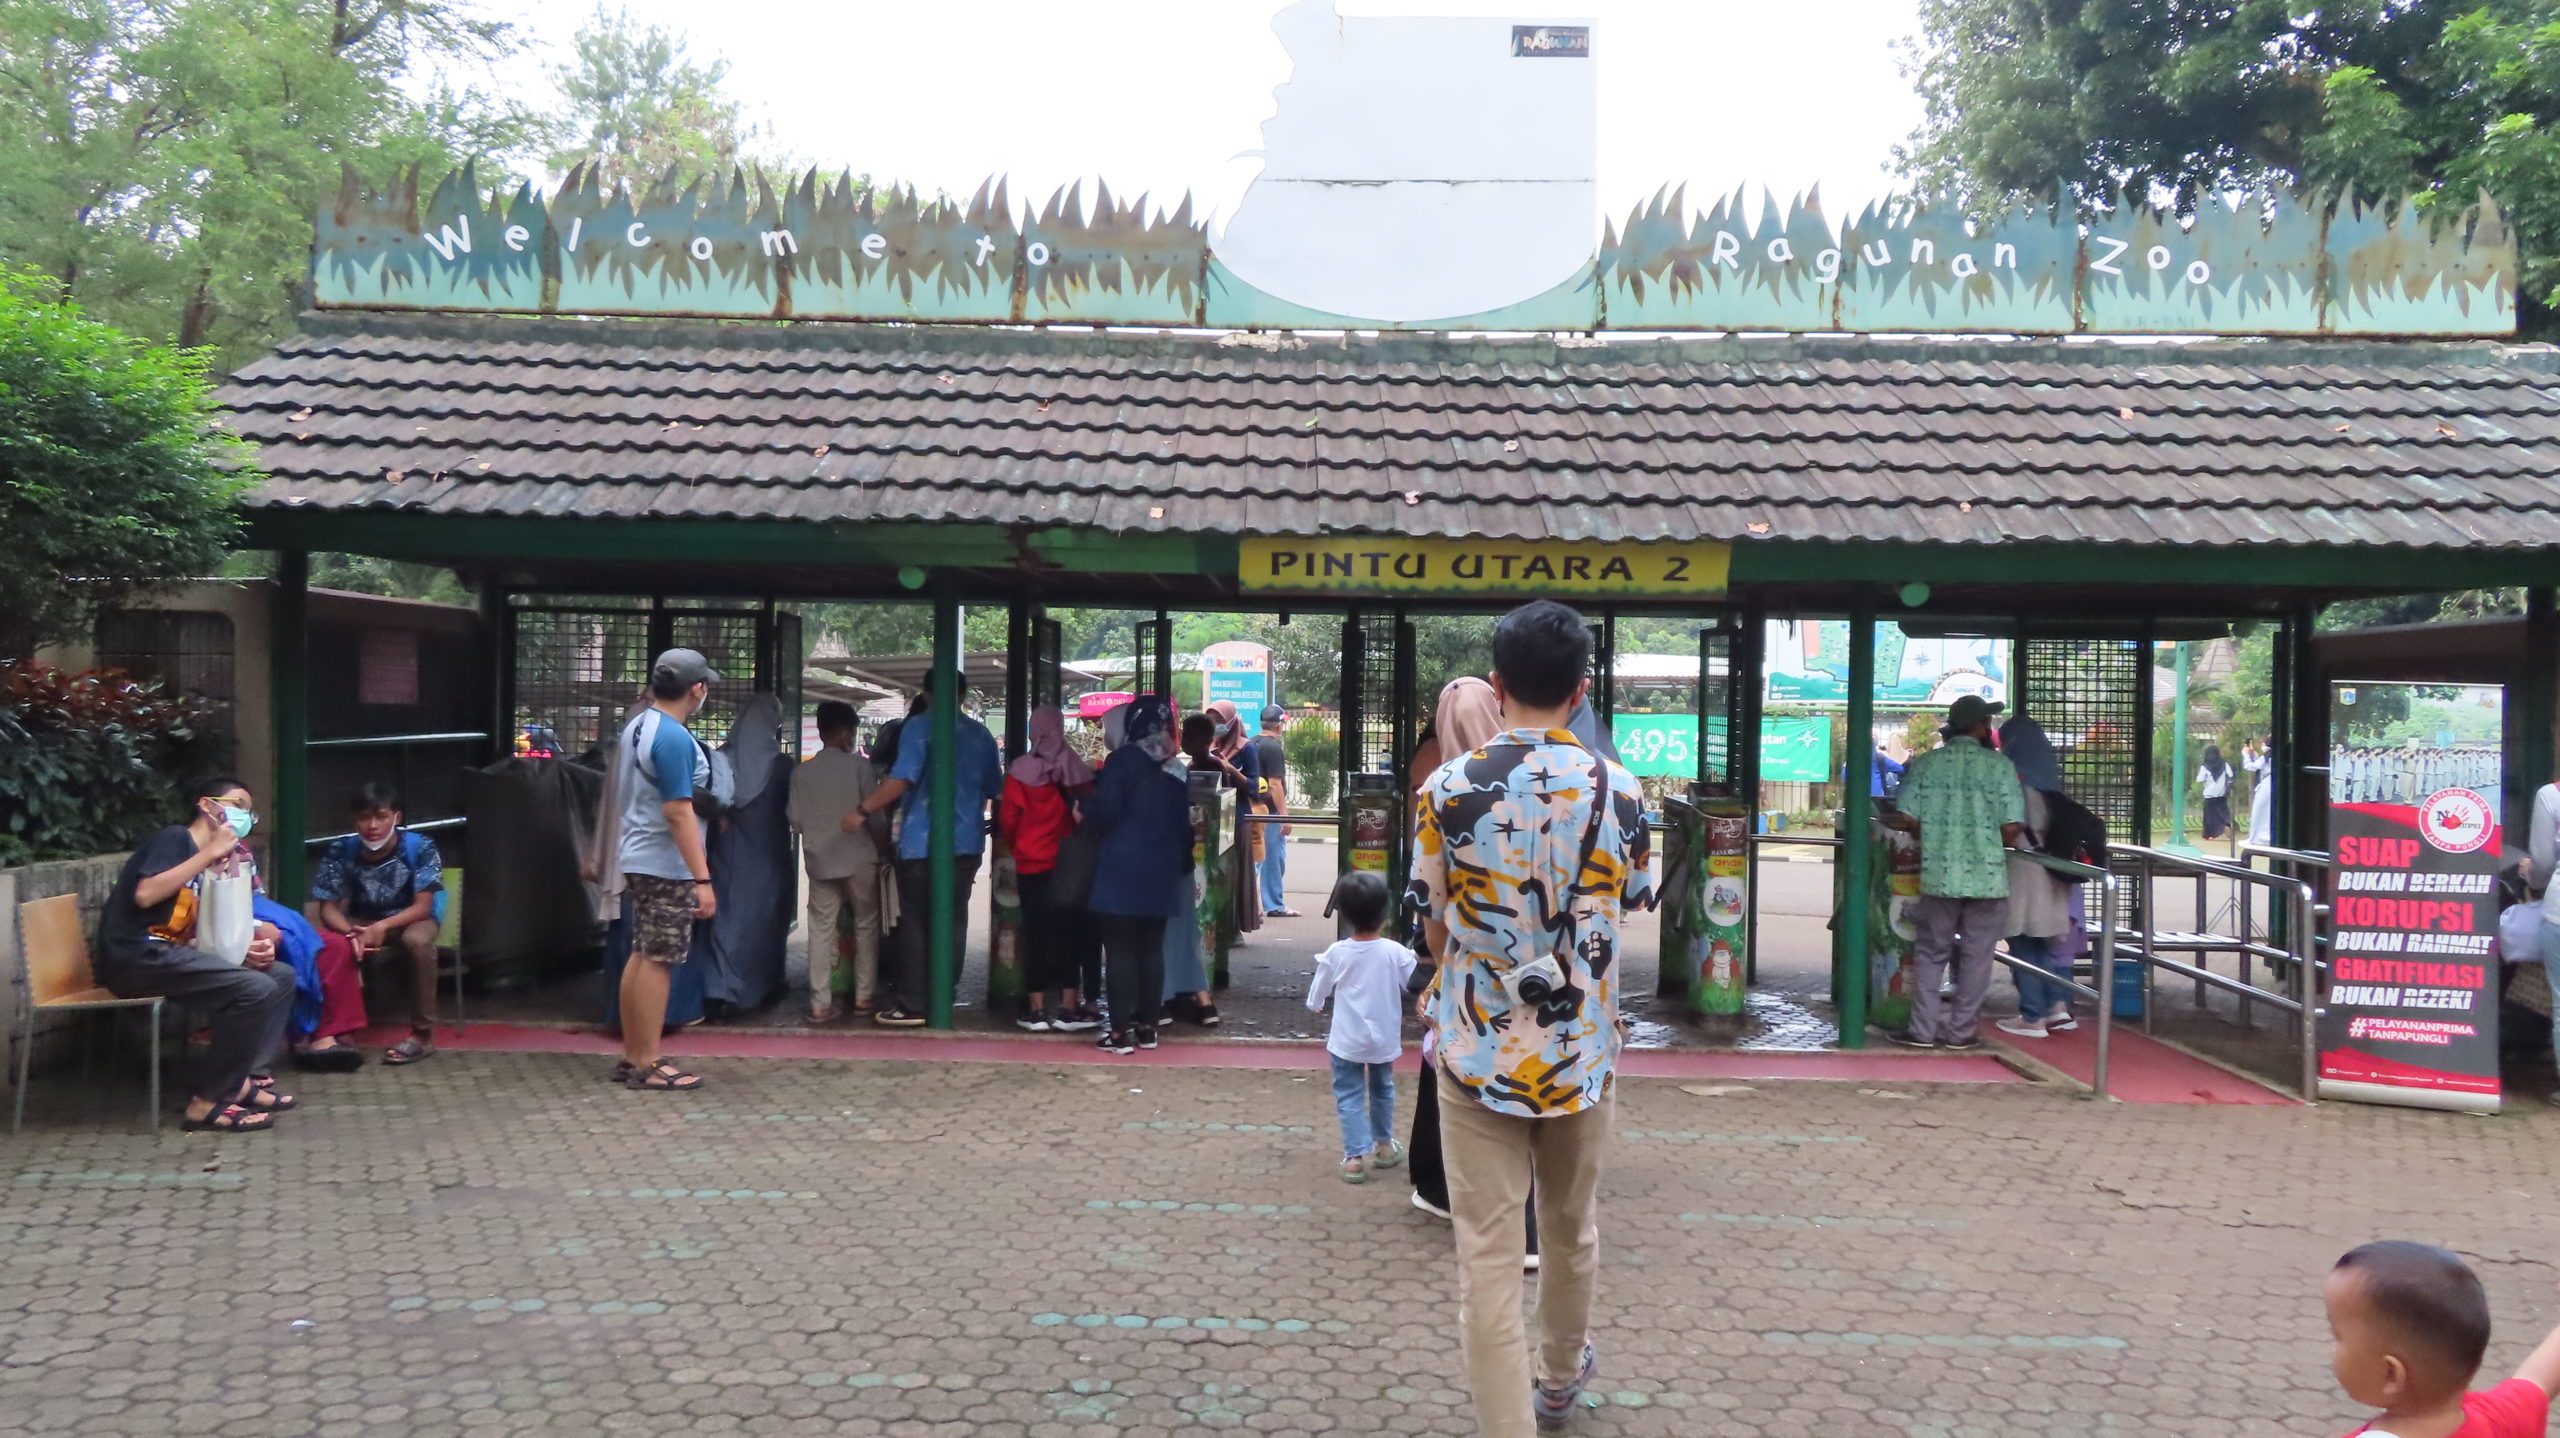 Kebun binatang ragunan ramai pengunjung saat libur sekolah